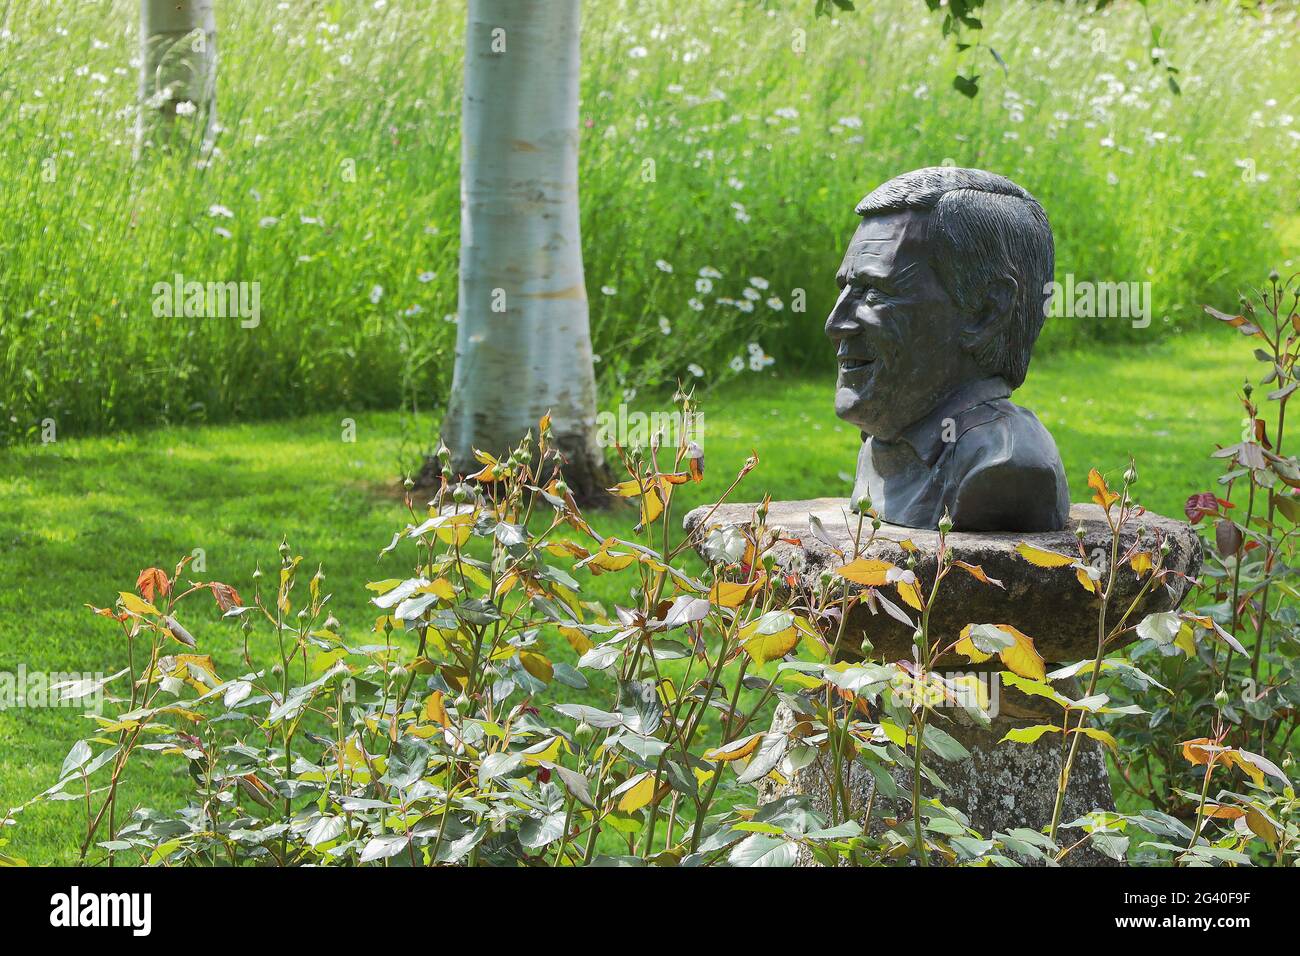 Busto del difunto Geoff Hamilton, jardinero y locutor de celebridades de la BBC, en Barnsdale Gardens, Rutland, Inglaterra, Reino Unido Foto de stock